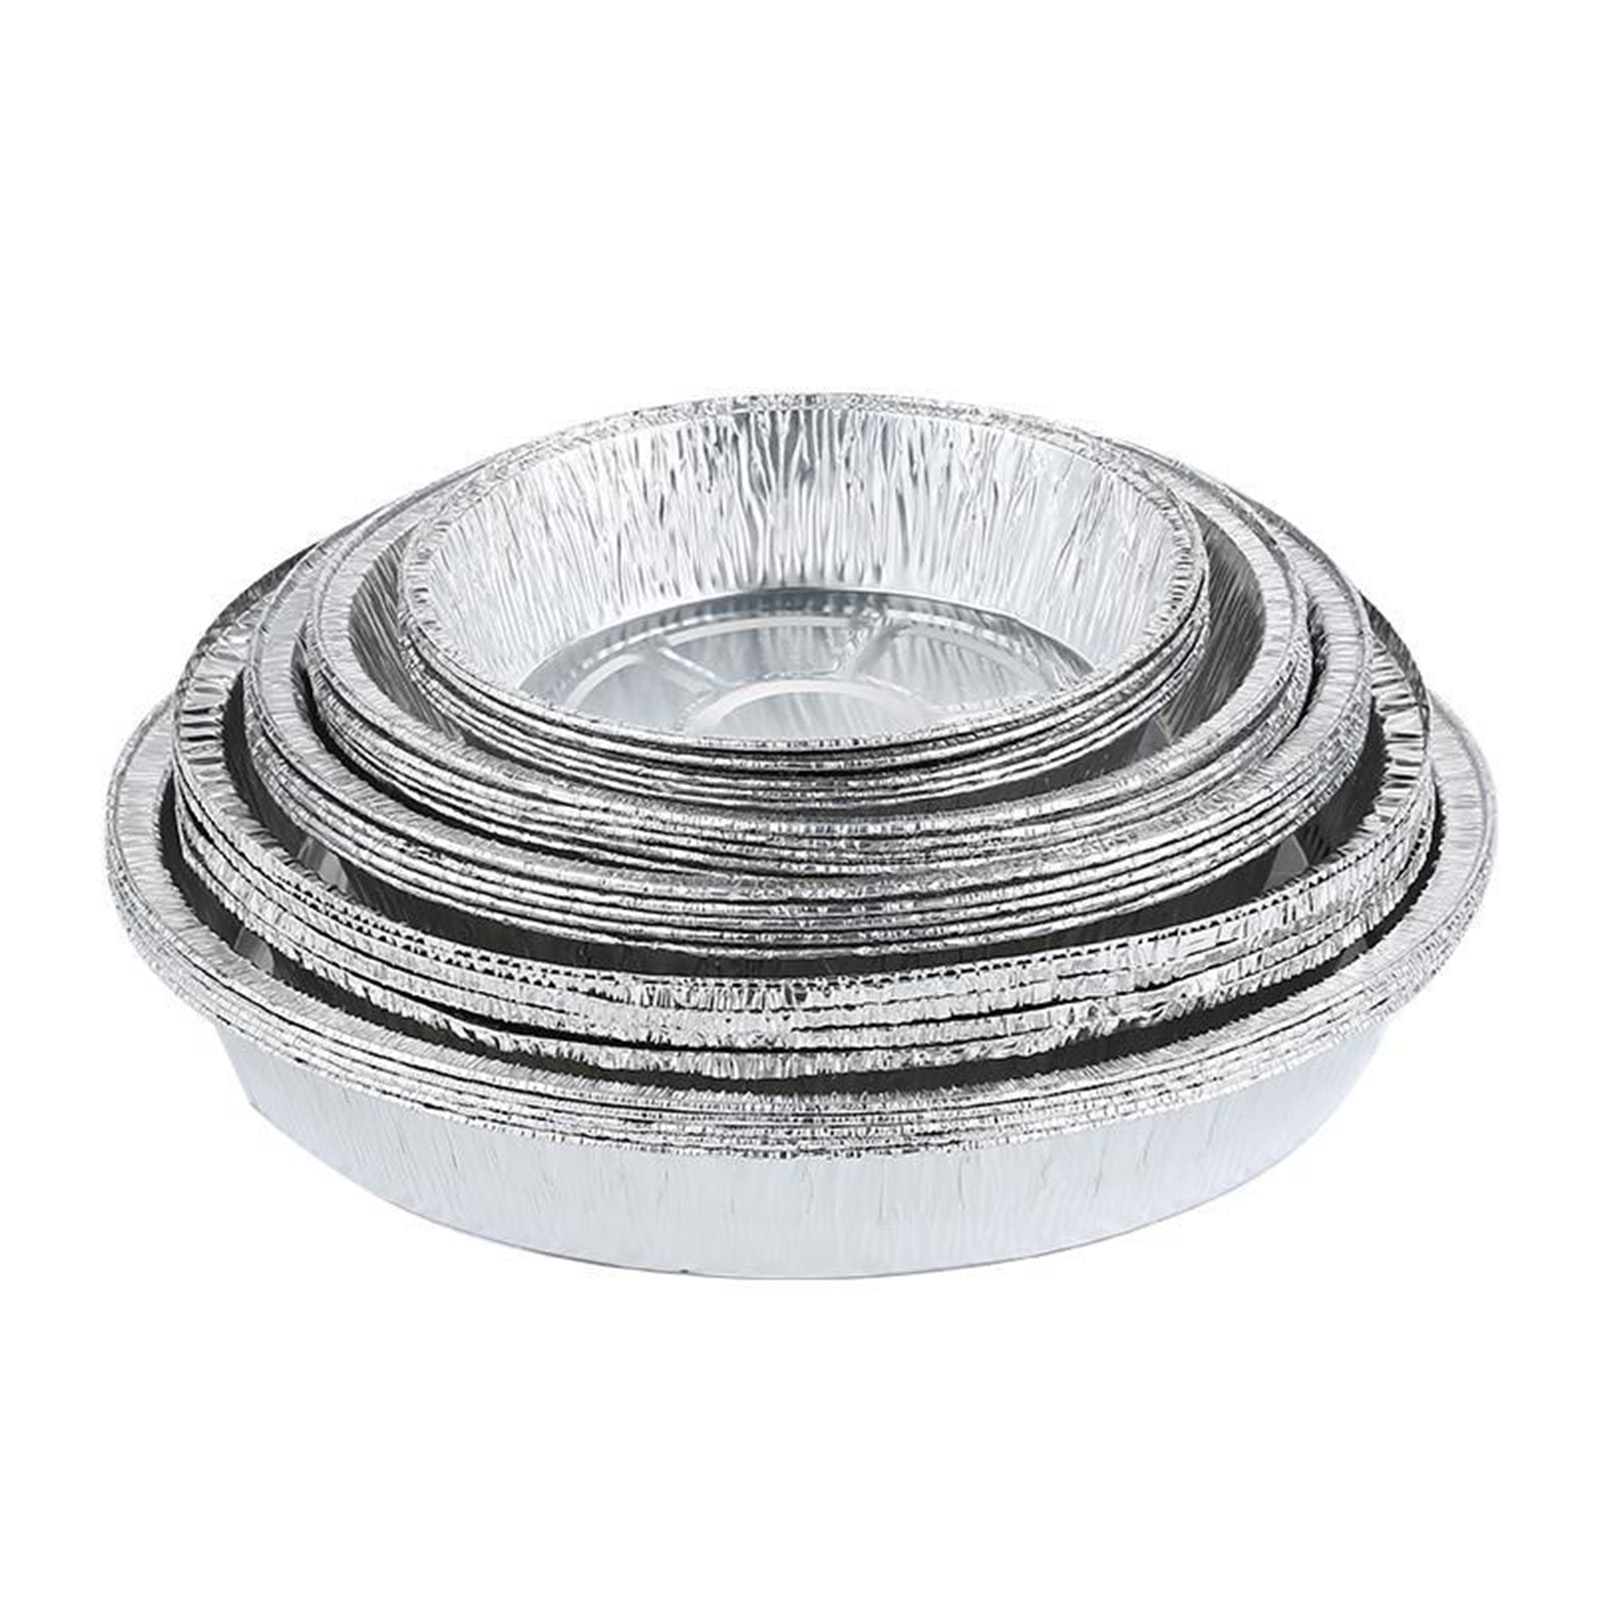 Contenedores de alimentos de aluminio de aluminio sano de aluminio de 6 pulgadas/7 pulgadas redondas para hornear/almacenar/recalentar/preparación